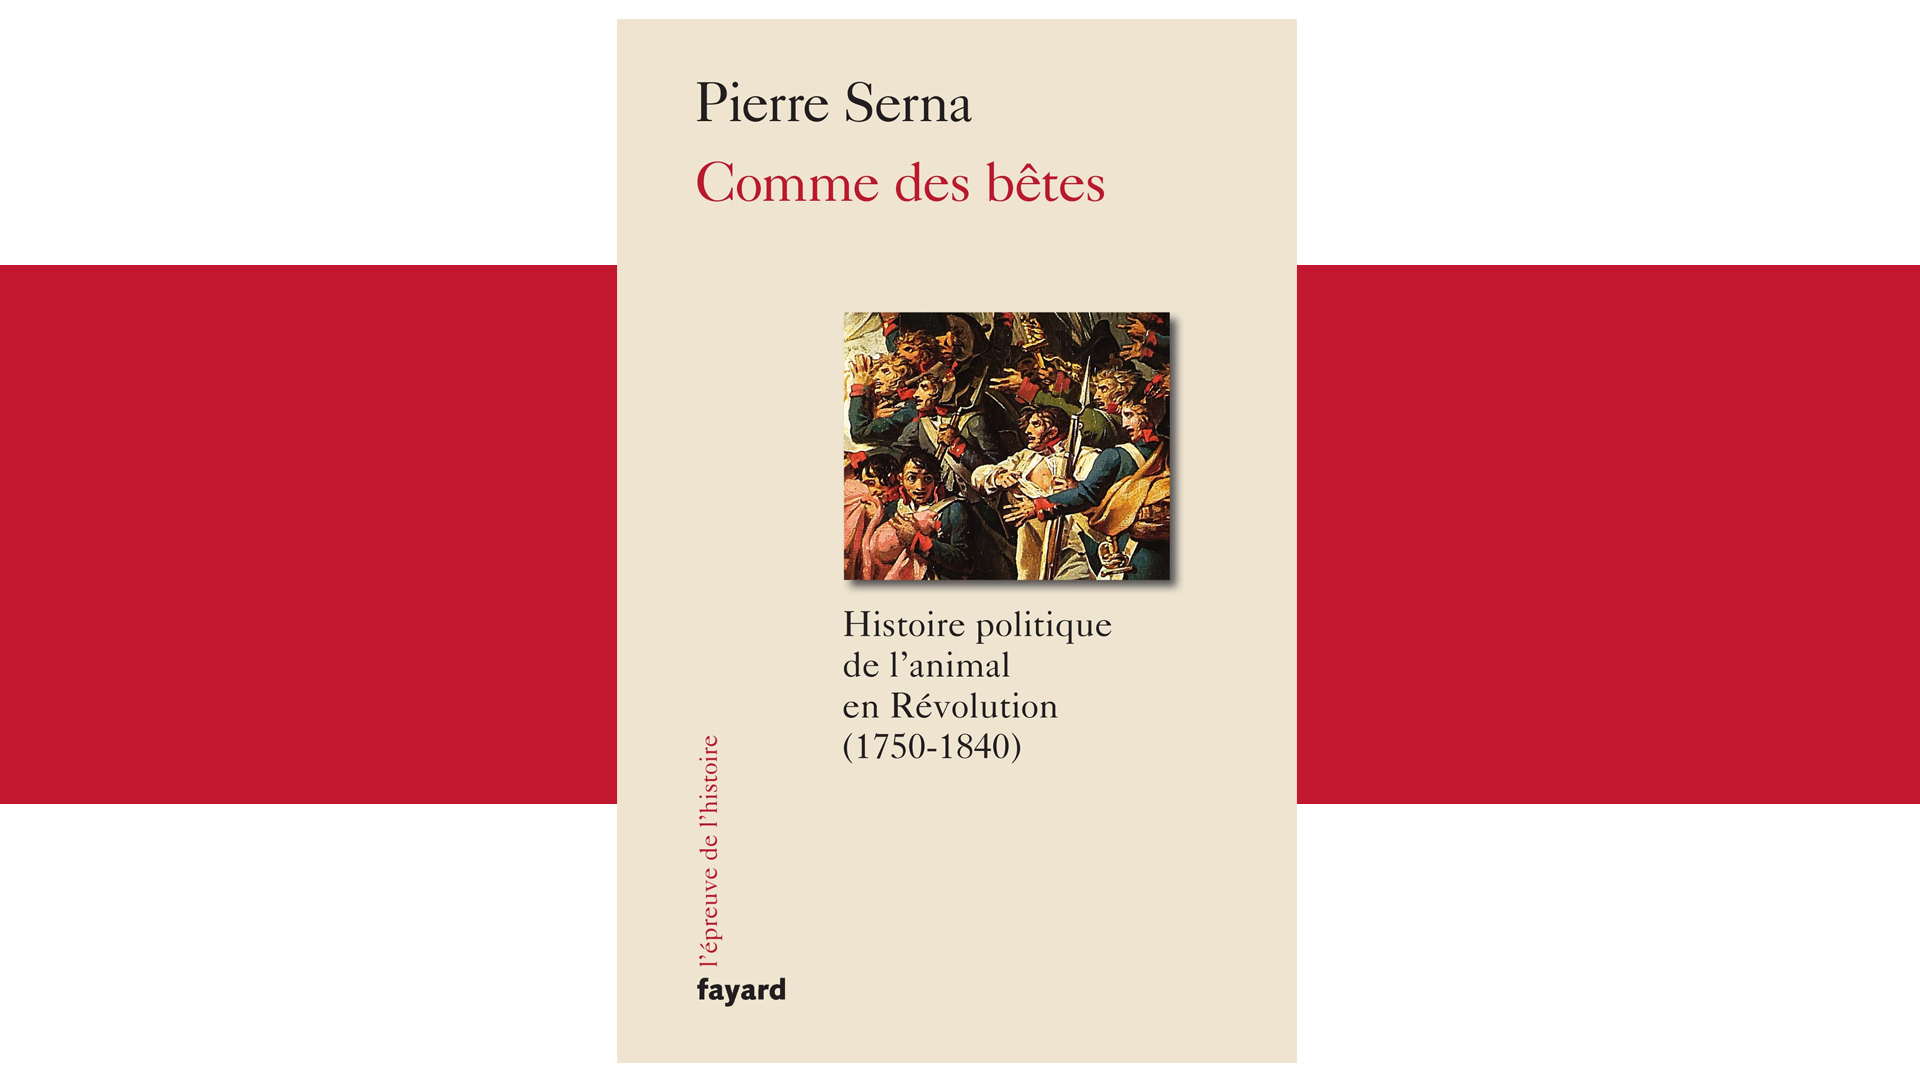 Pierre Serna, Commes des bêtes. Histoire politique de l’animal en Révolution (1750-1840), Paris, Fayard, 2017, 444 pp.